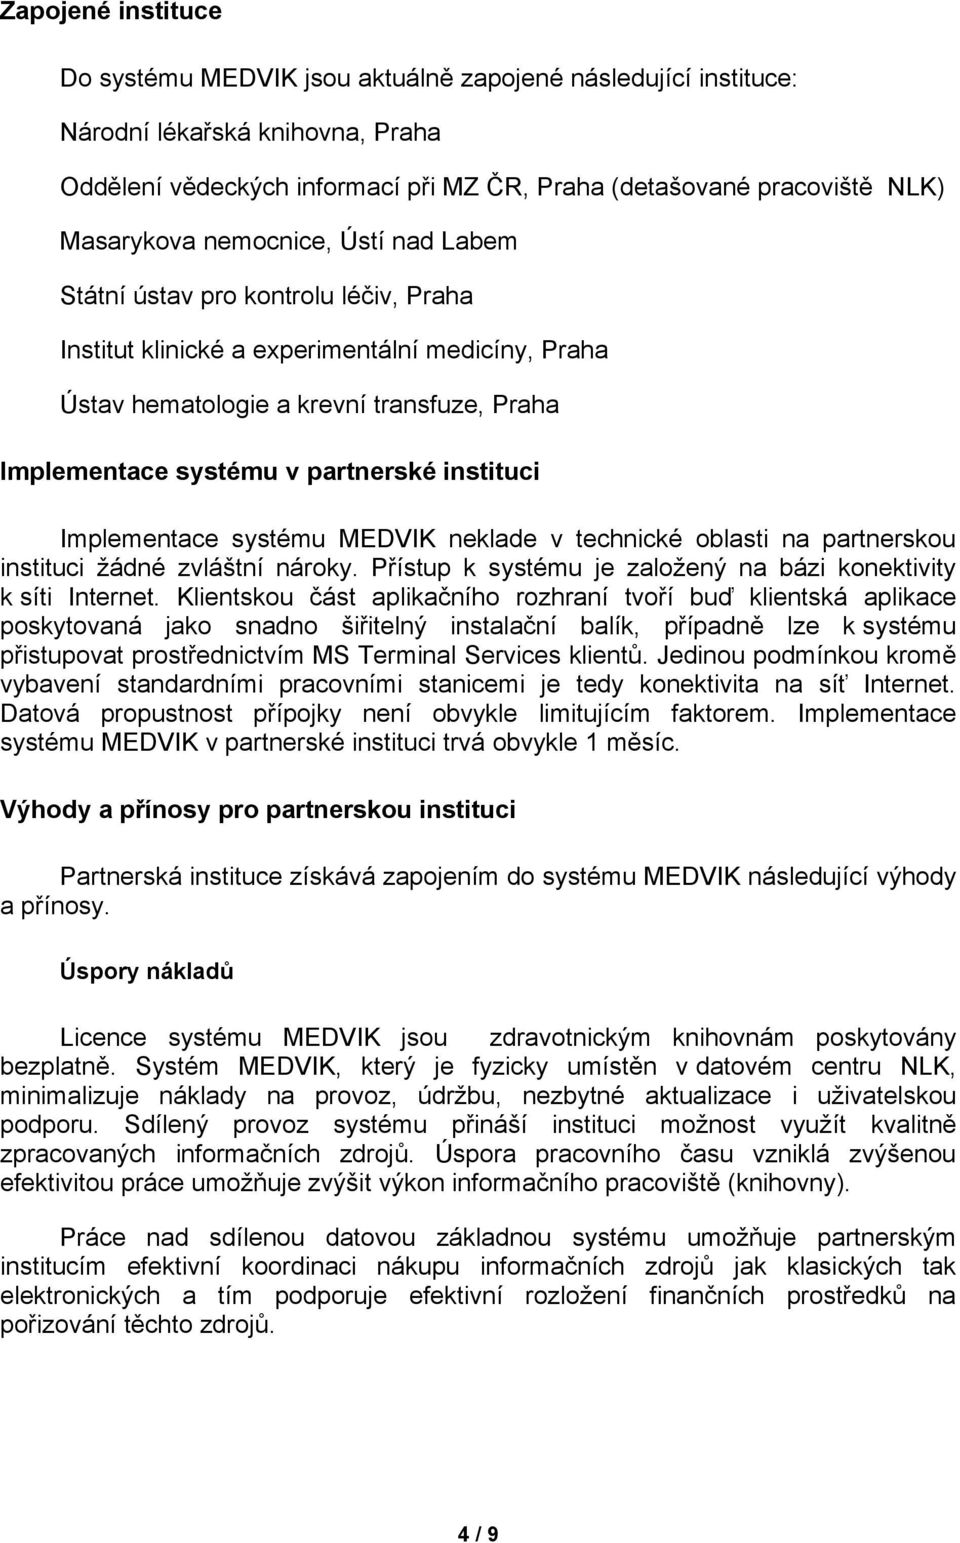 partnerské instituci Implementace systému MEDVIK neklade v technické oblasti na partnerskou instituci žádné zvláštní nároky. Přístup k systému je založený na bázi konektivity k síti Internet.